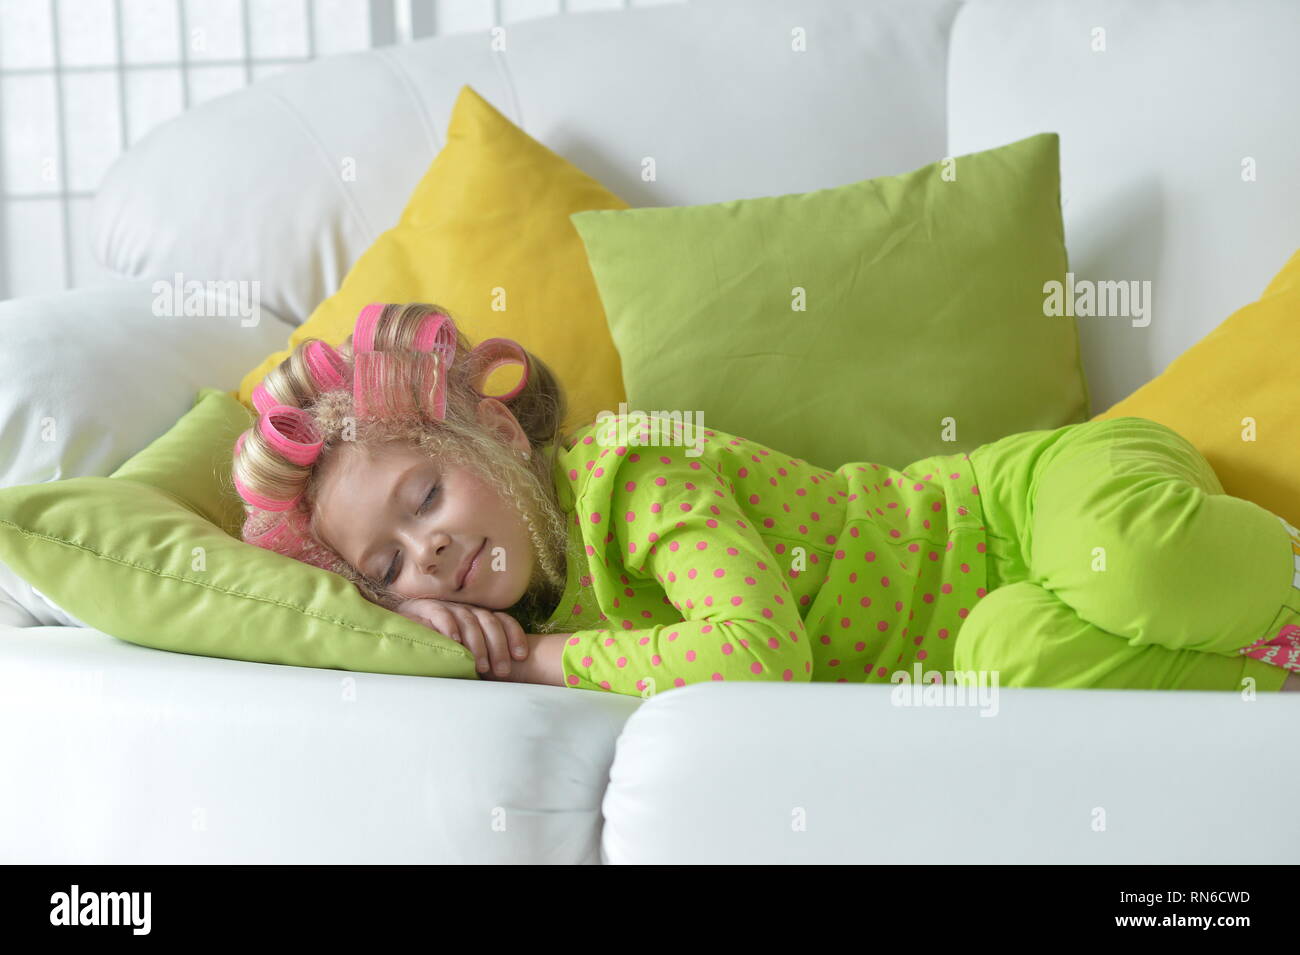 Bonita niña con rulos rosa durmiendo Foto de stock